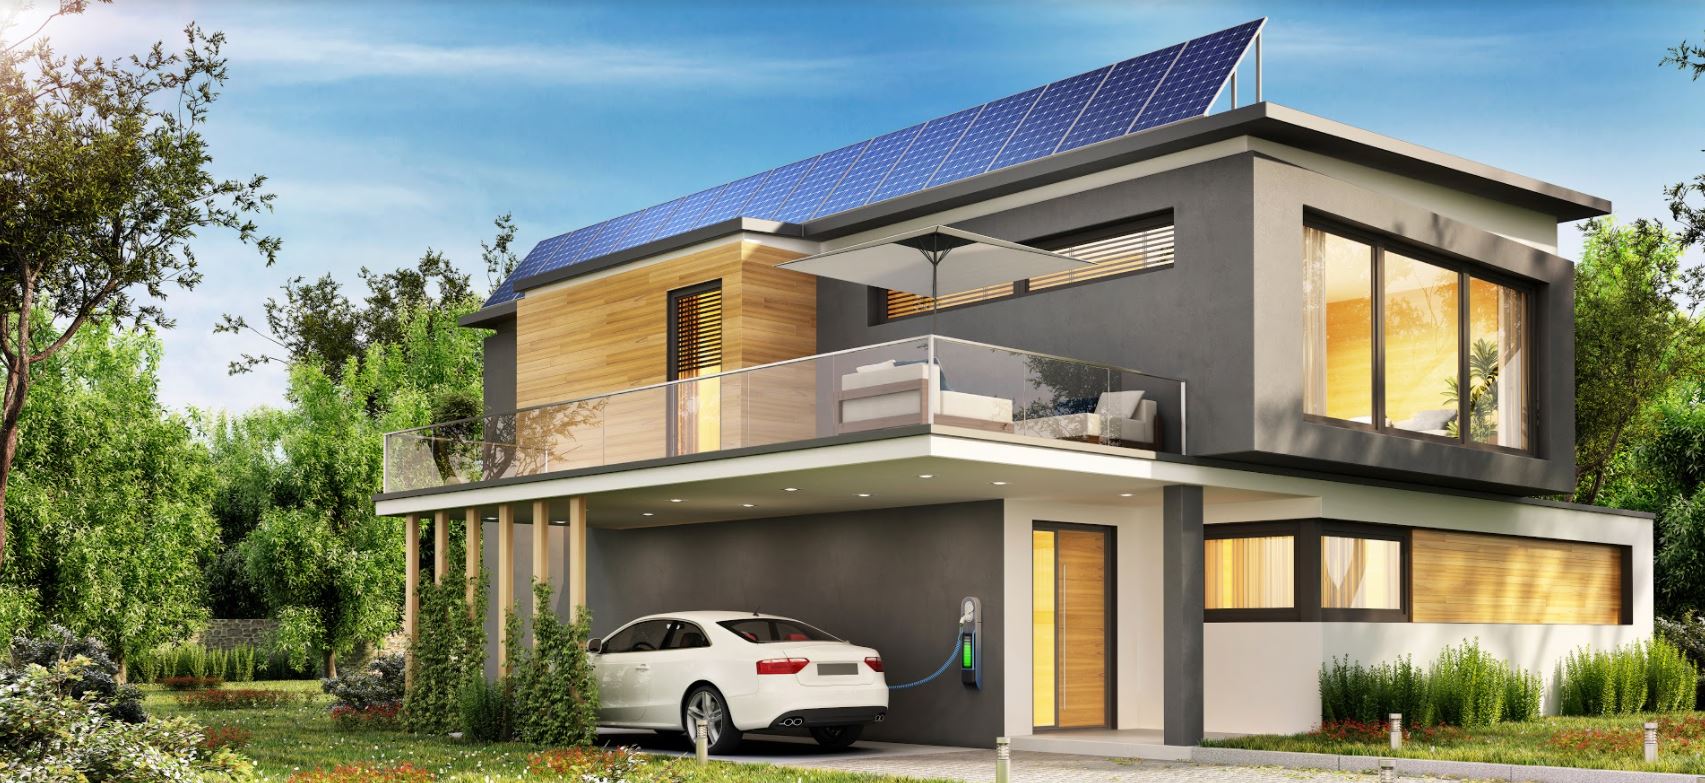 家用太阳能电池板充电的电动汽车